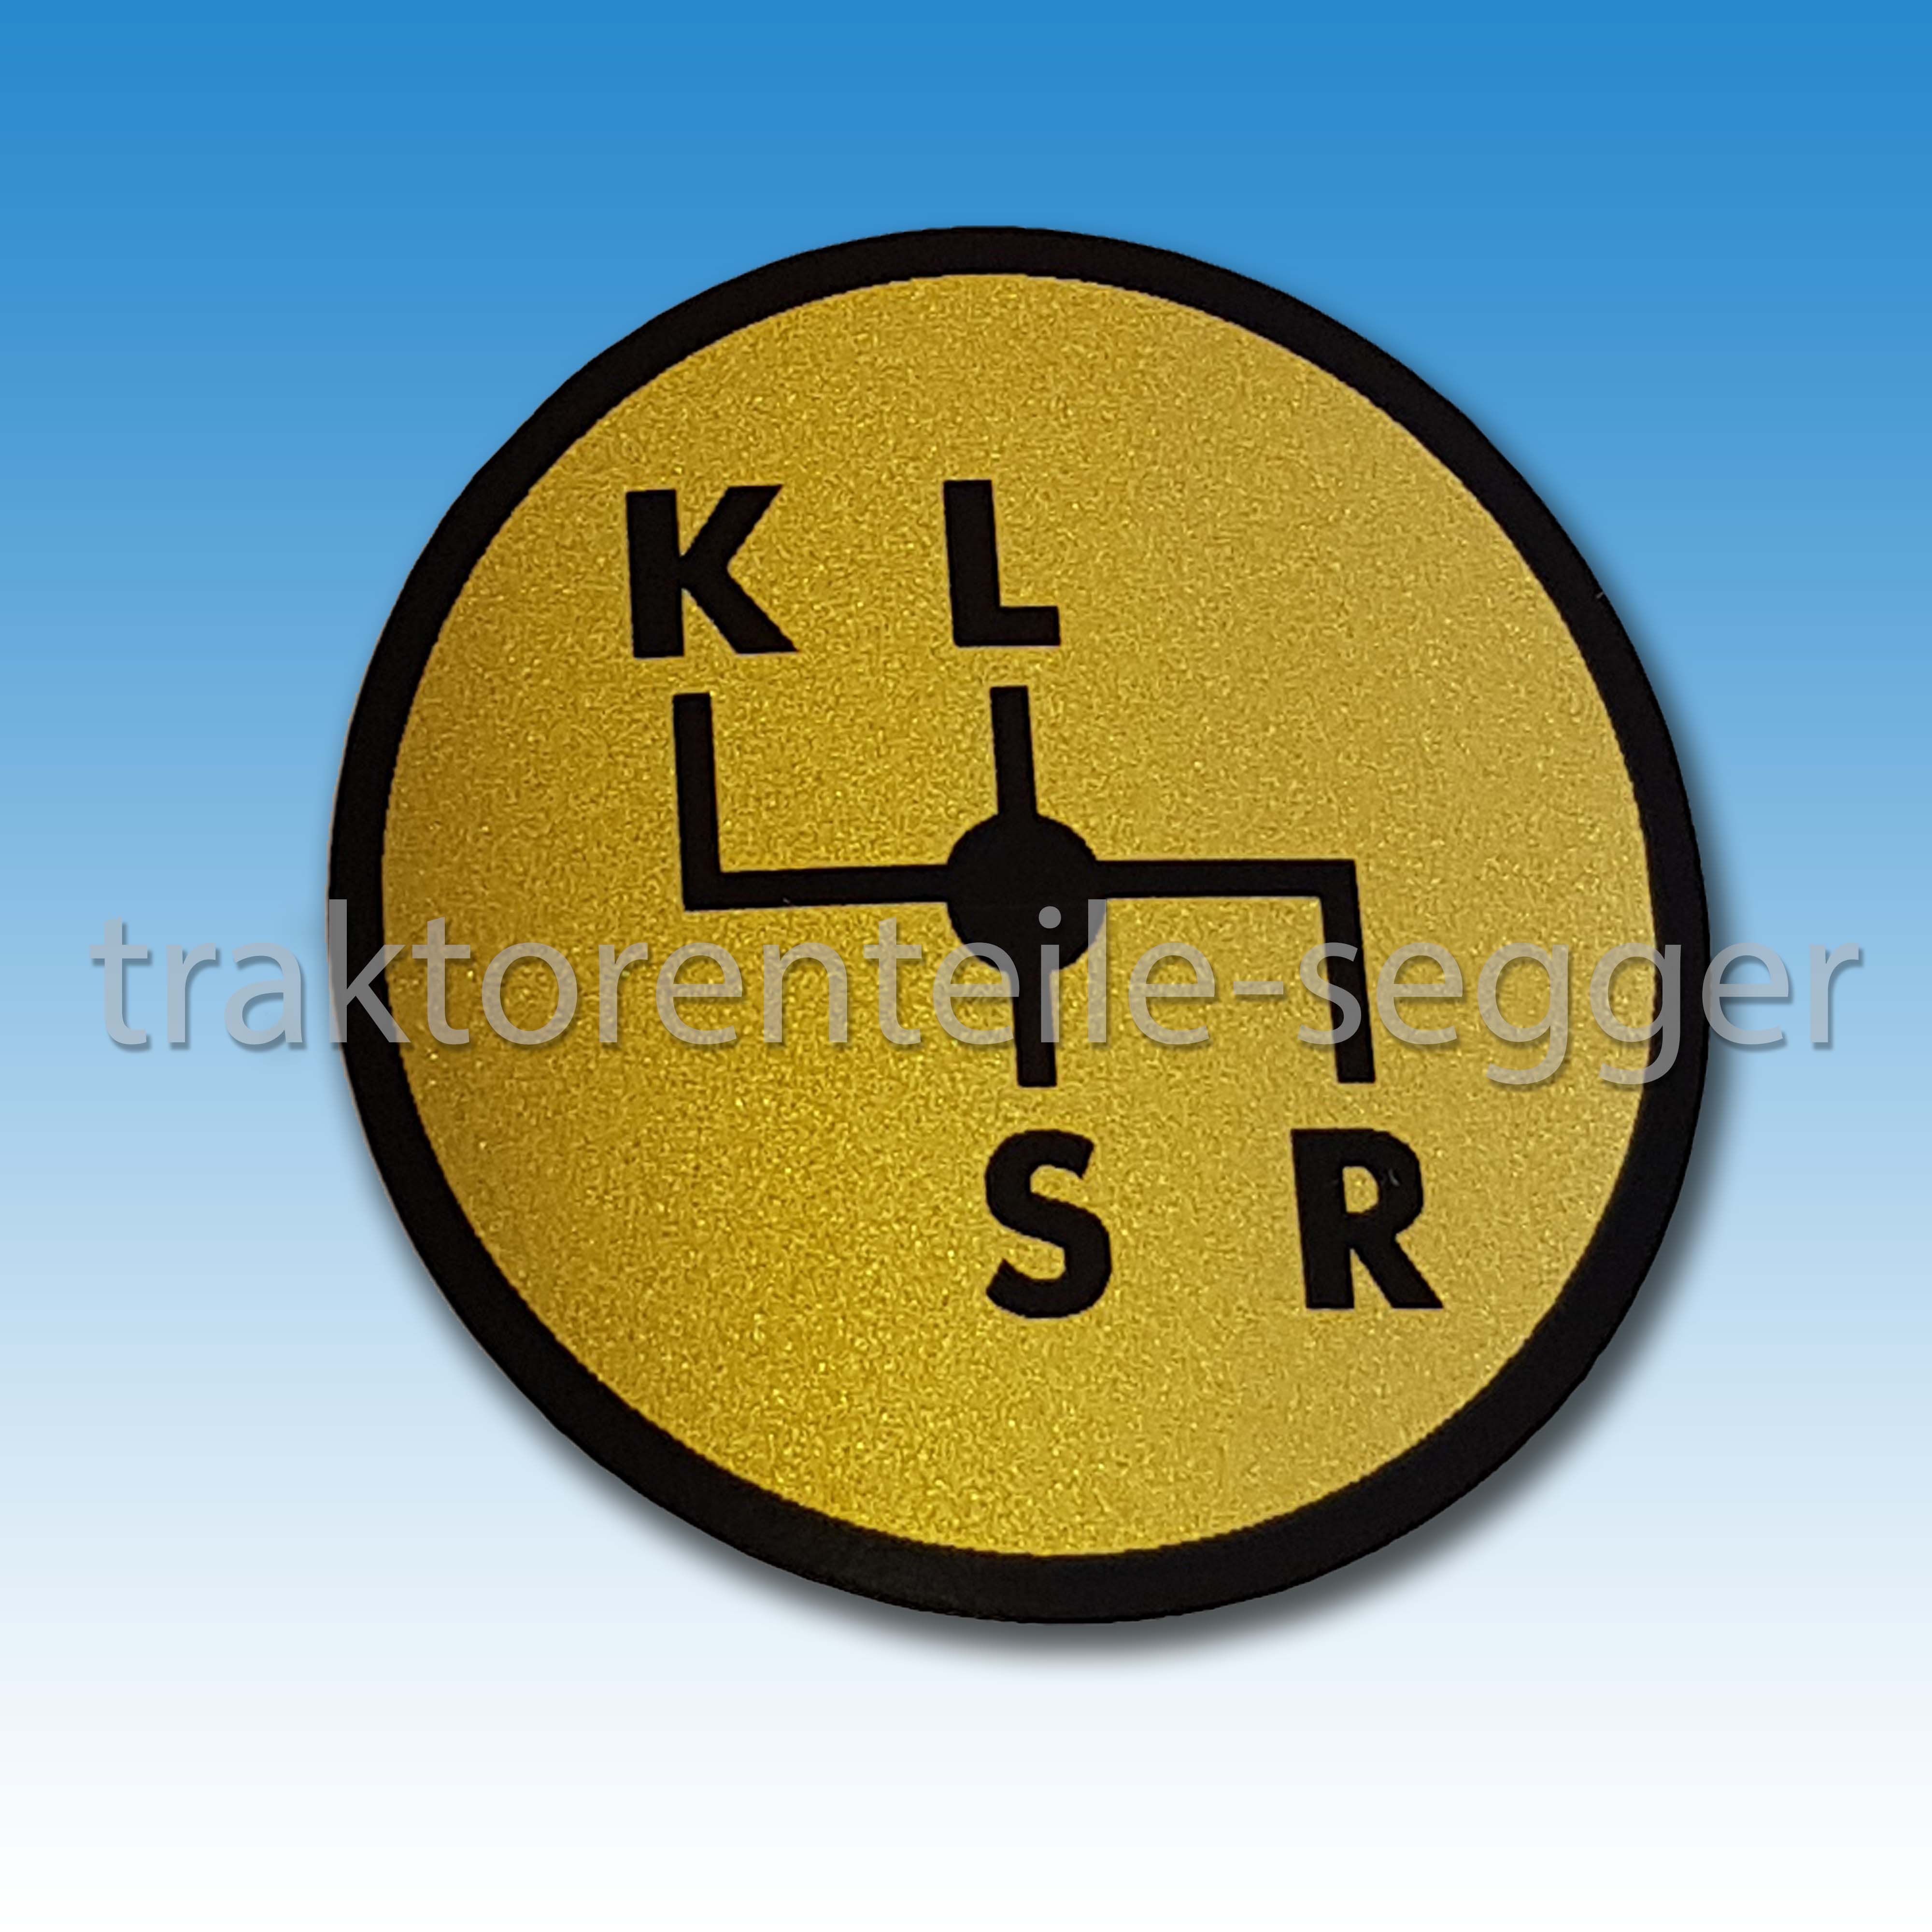 Traktorenteile Segger - Aufkleber Schaltschema Deutz 06 Baureihe K L S R